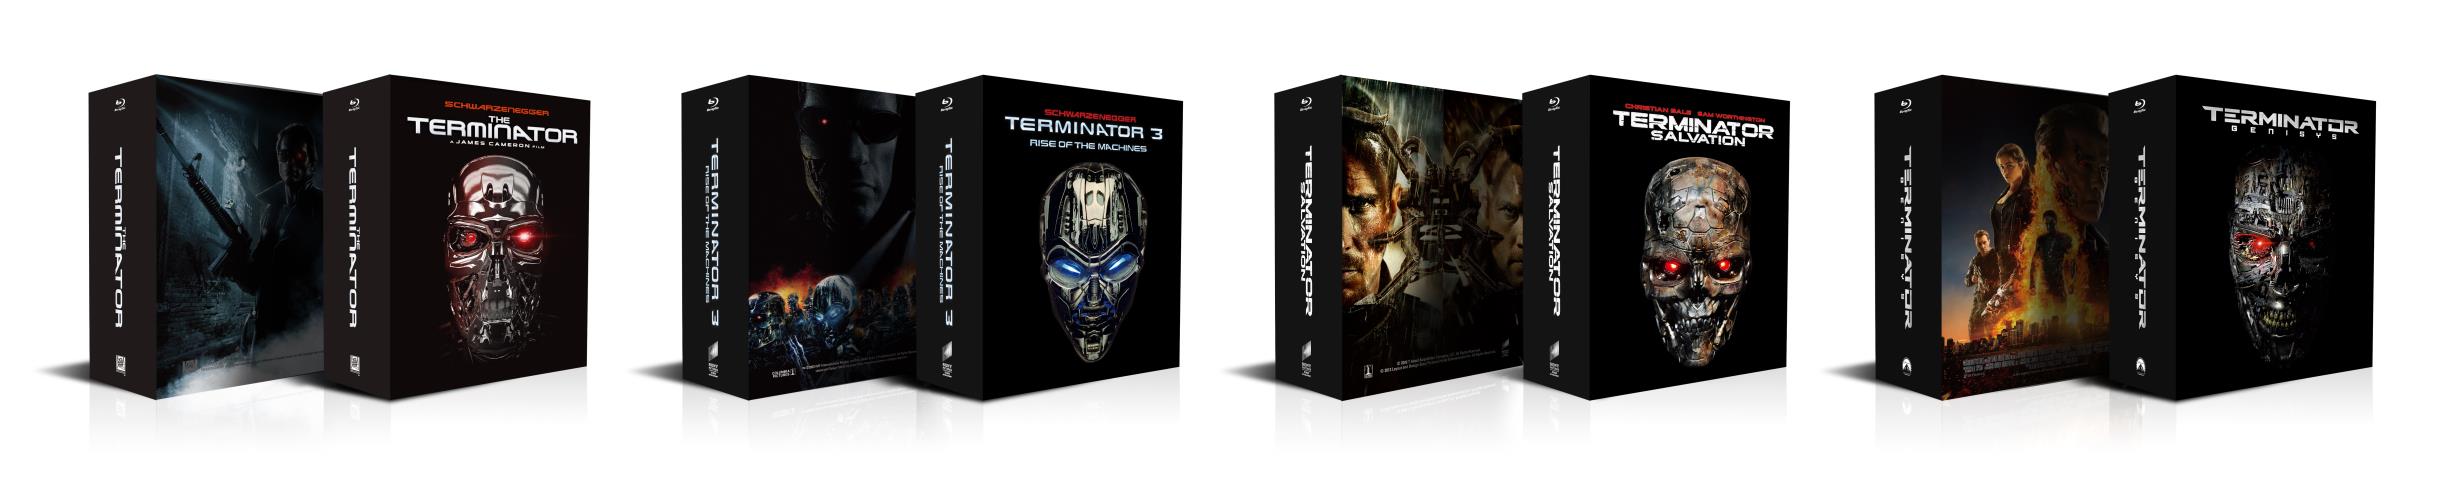 Terminator T1 Boxset steelbook HDzeta